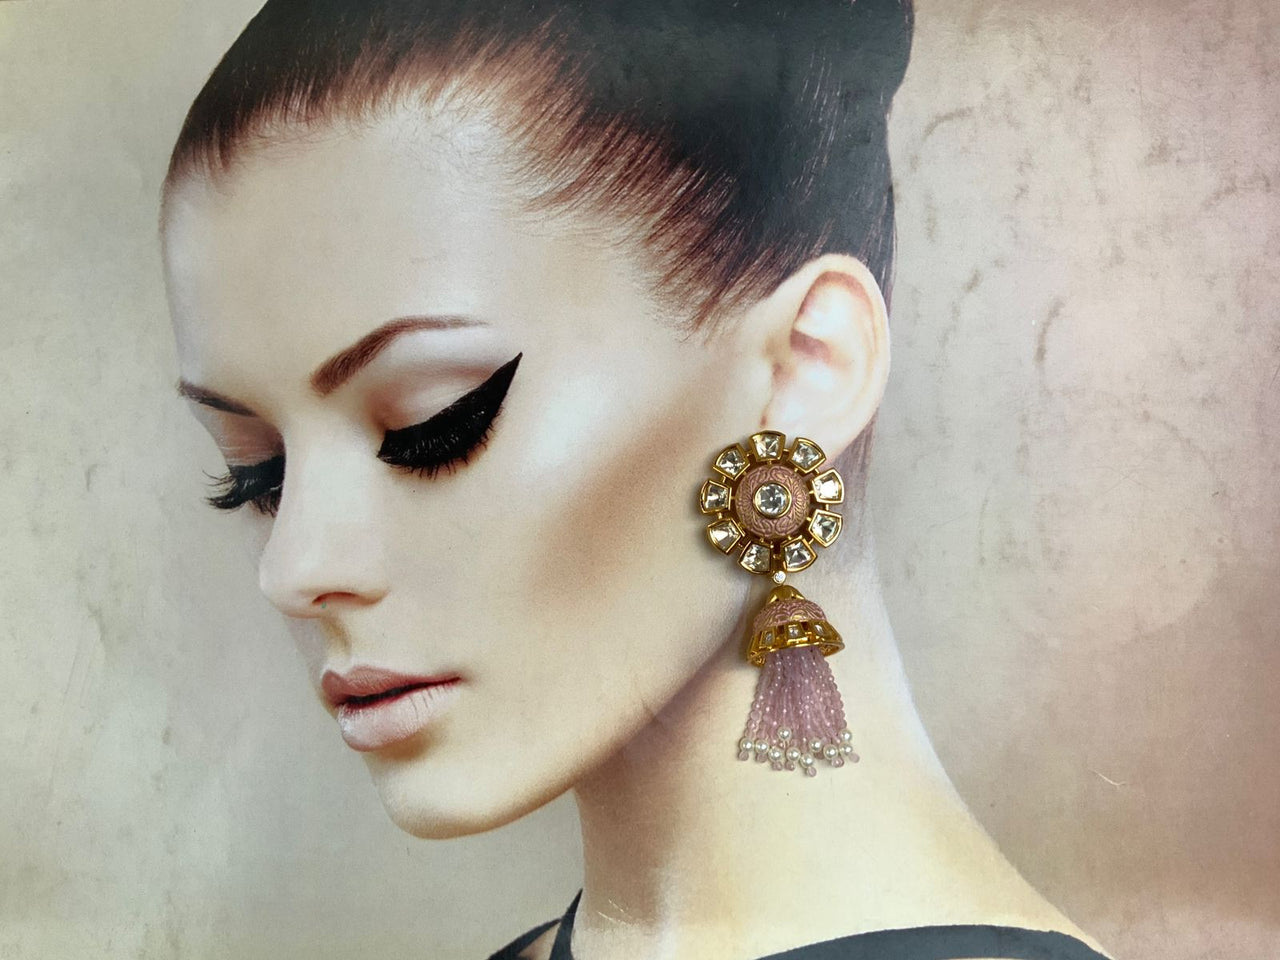 Ethnic Indian jhumka Style Earring - Abdesignsjewellery